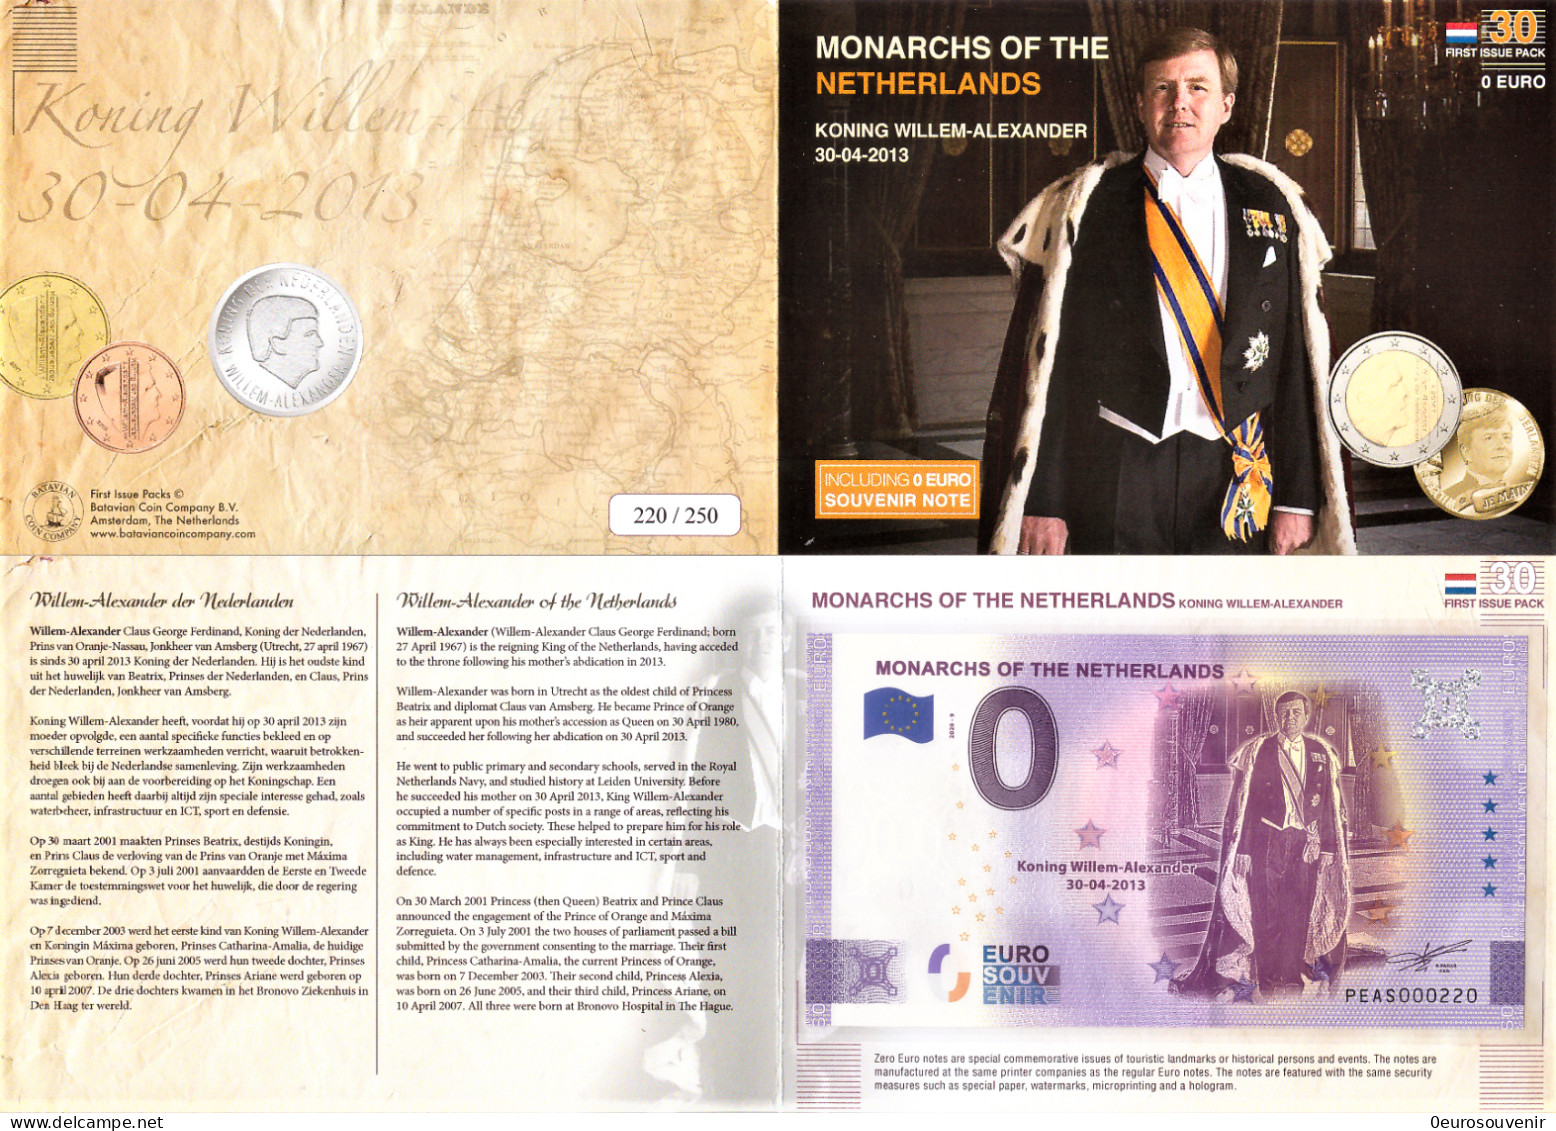 0-Euro PEAS 2020-9 MONARCHS OF THE NETHERLANDS WILLEM-ALEXANDER 30-04-2013 First Issue Pack No. Nur Bis #250 ! - Pruebas Privadas